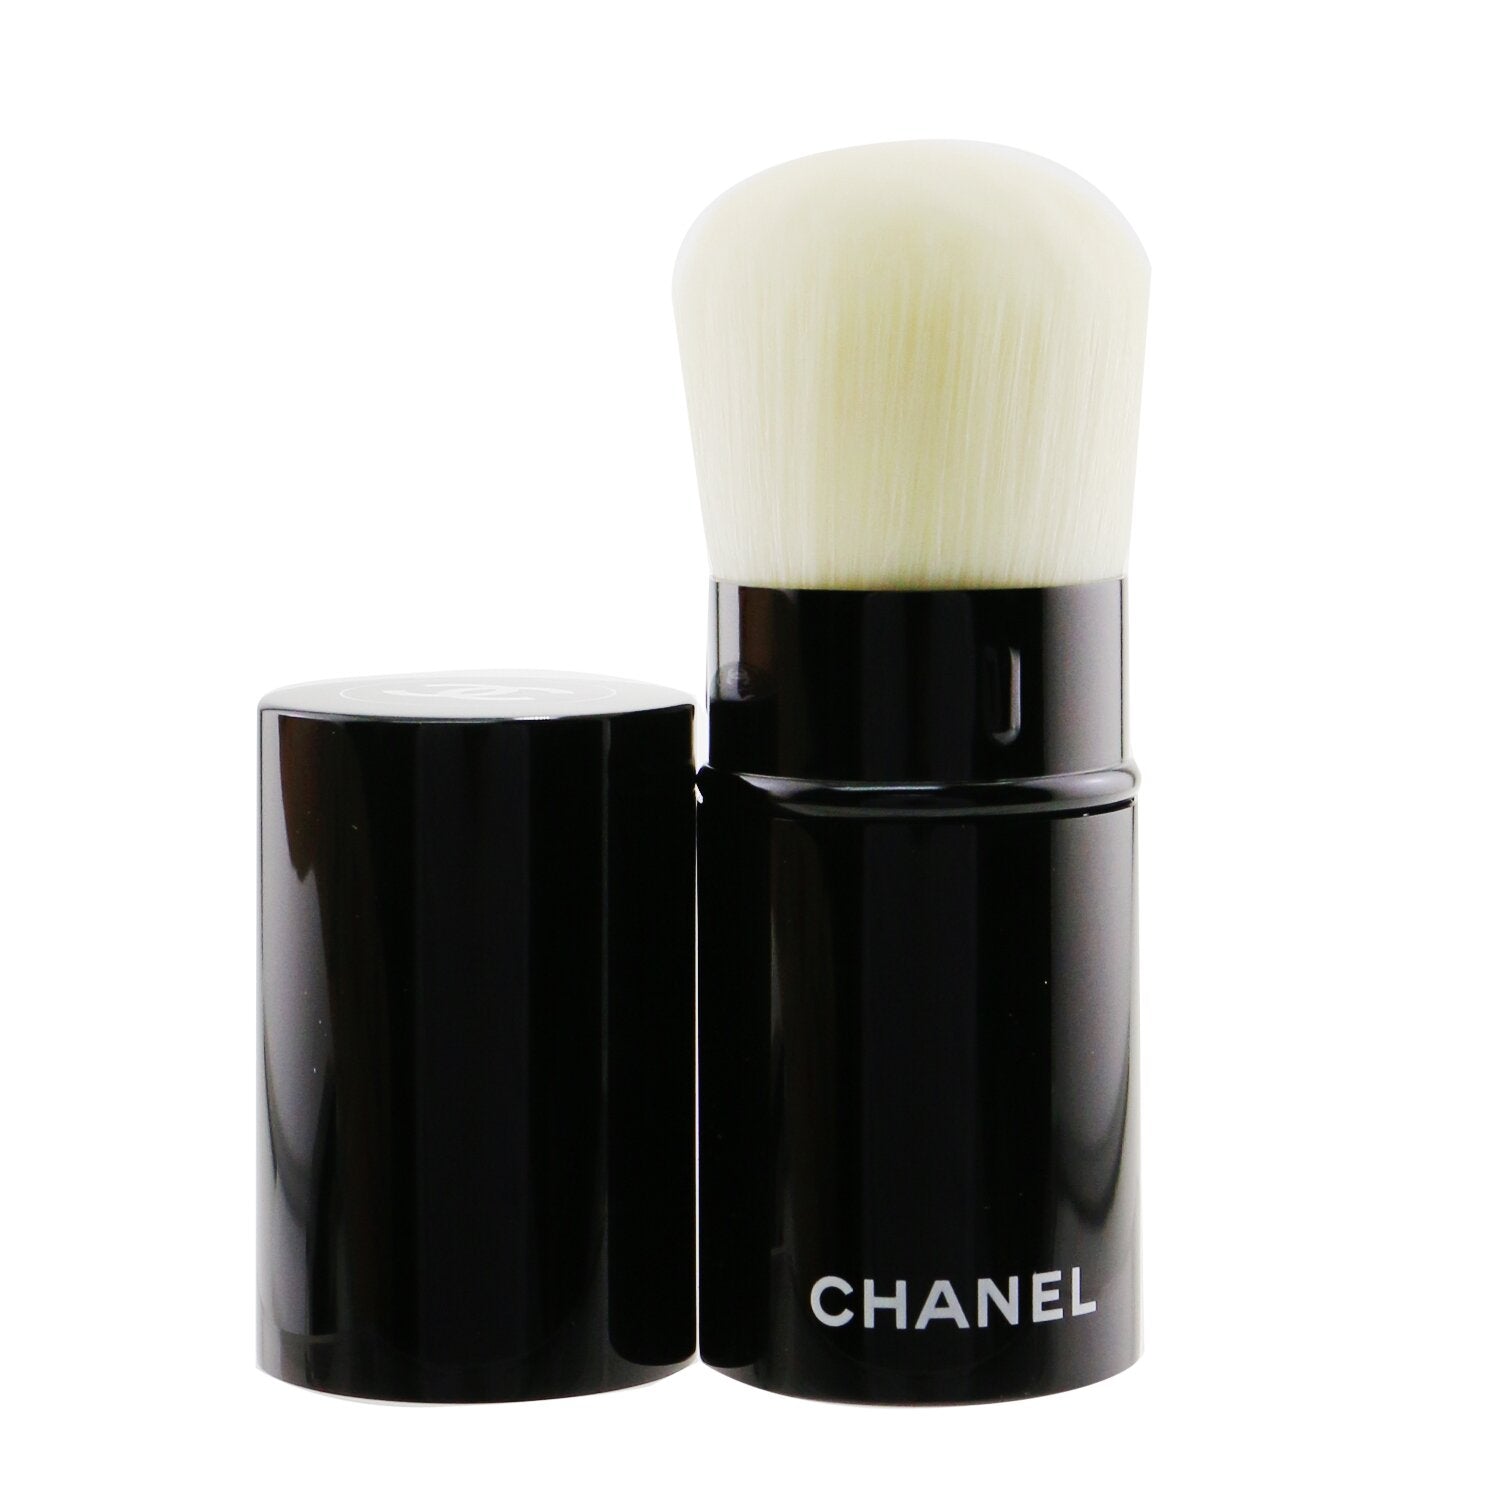 Chanel Makeup Kabuki Brushes